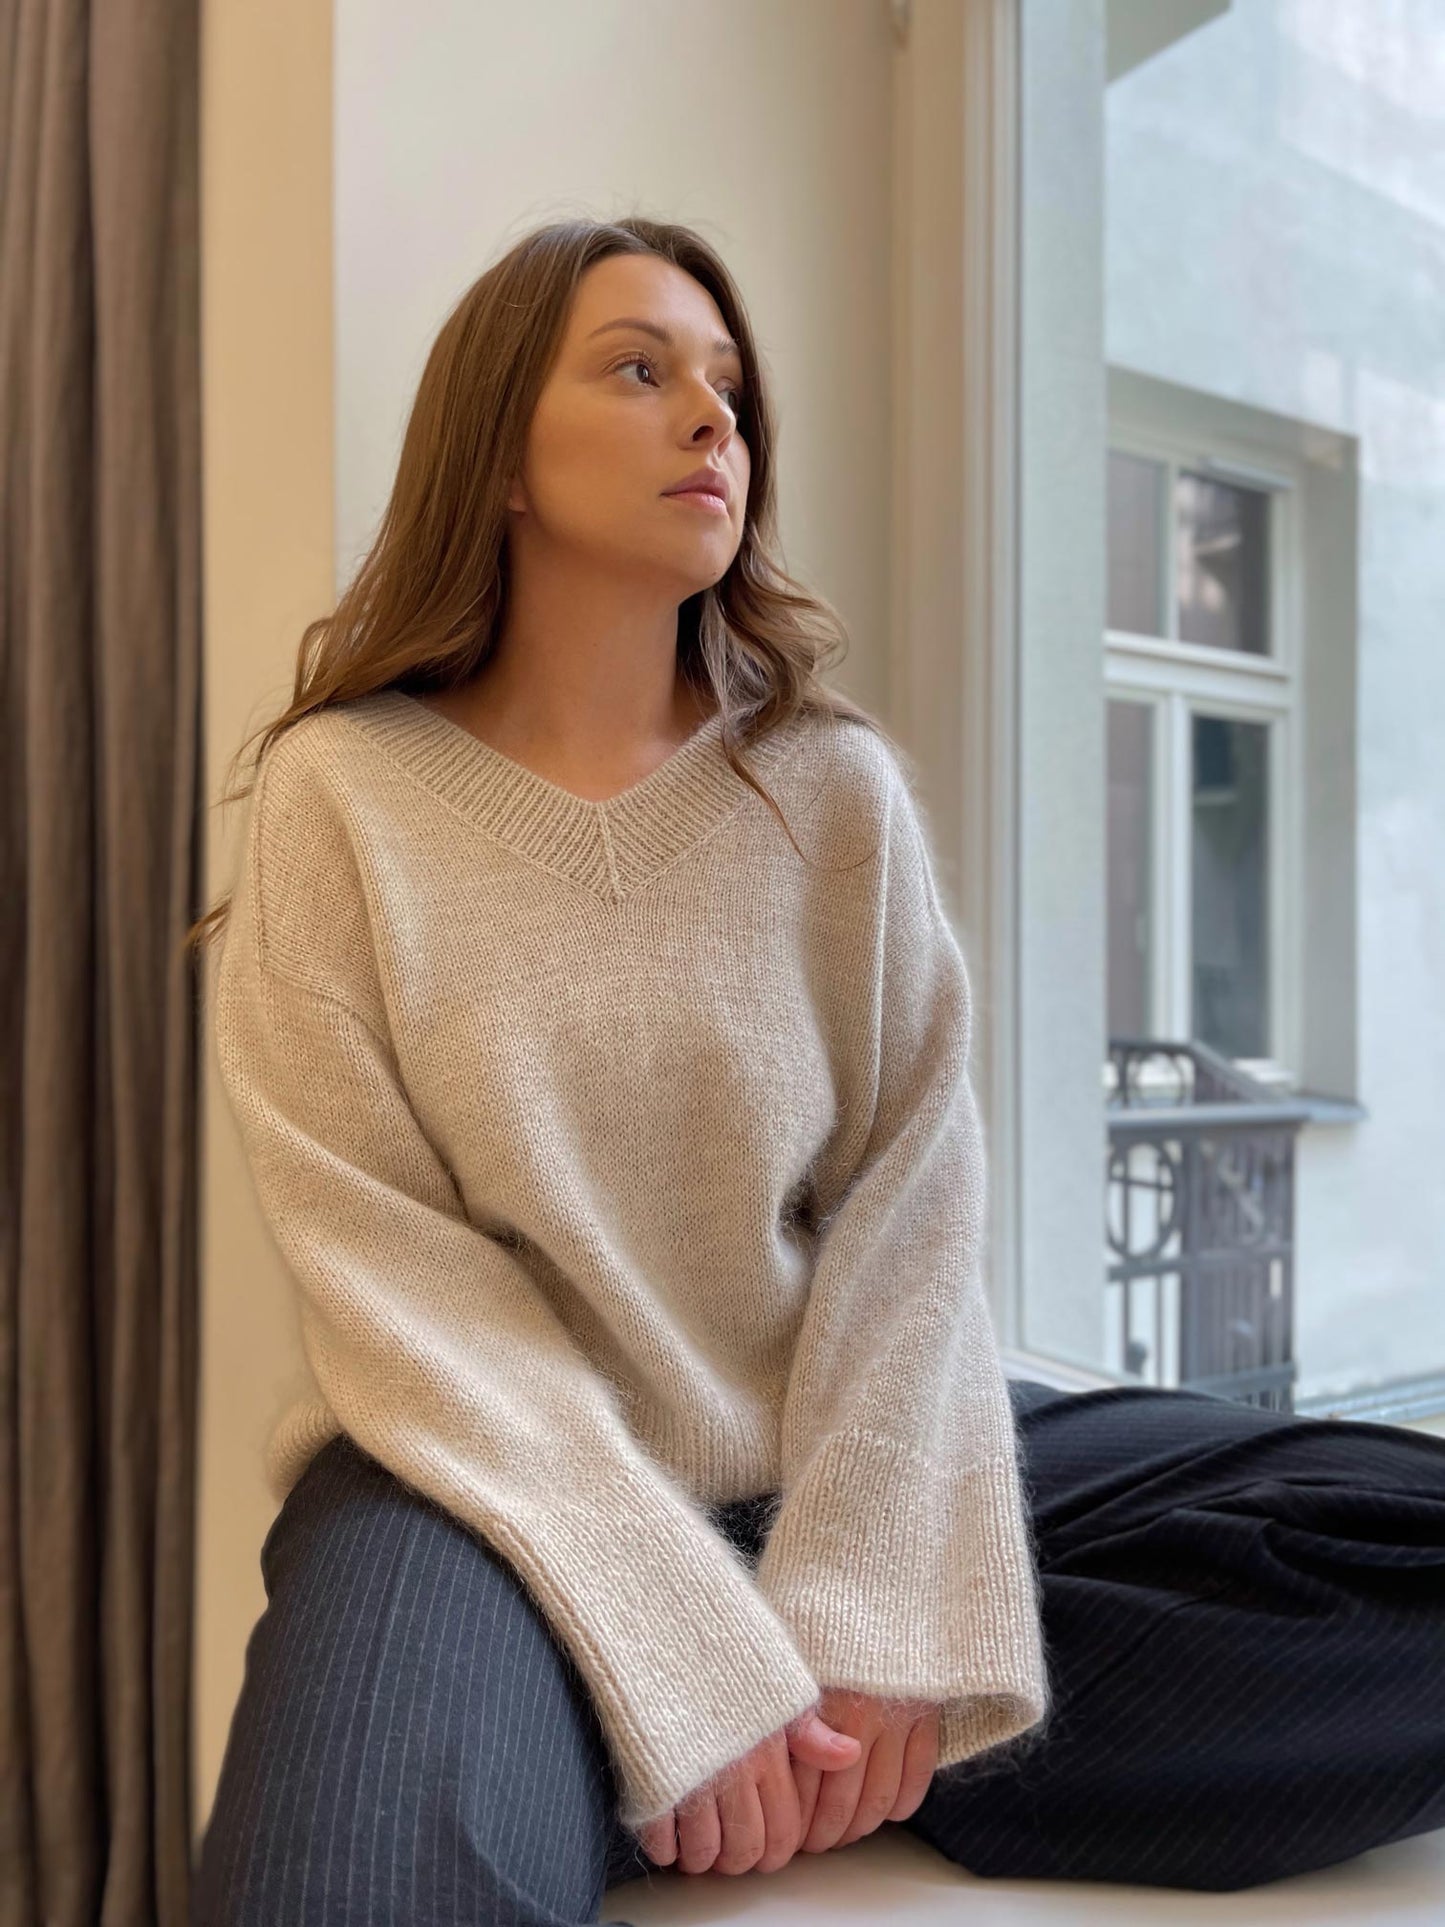 Strickplan für den Paul-Pullover, ein einfacher, doch ästhetischer Damenpullover in Grau, entworfen von morecaknit.